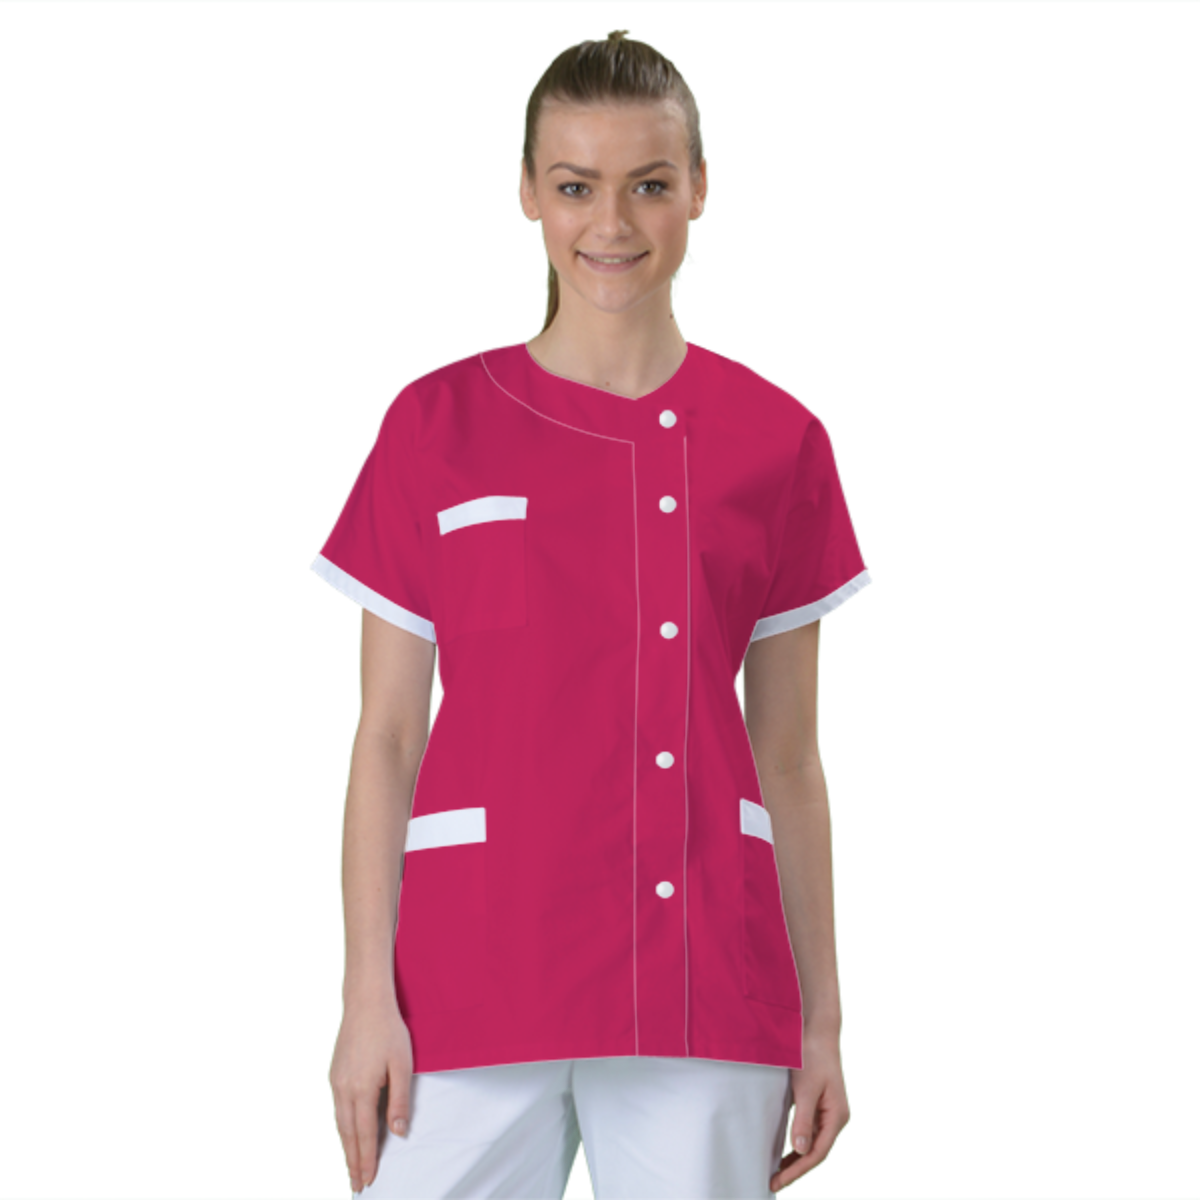 blouse-medicale-col-carre-a-personnaliser acheté - par Anais - le 16-11-2016